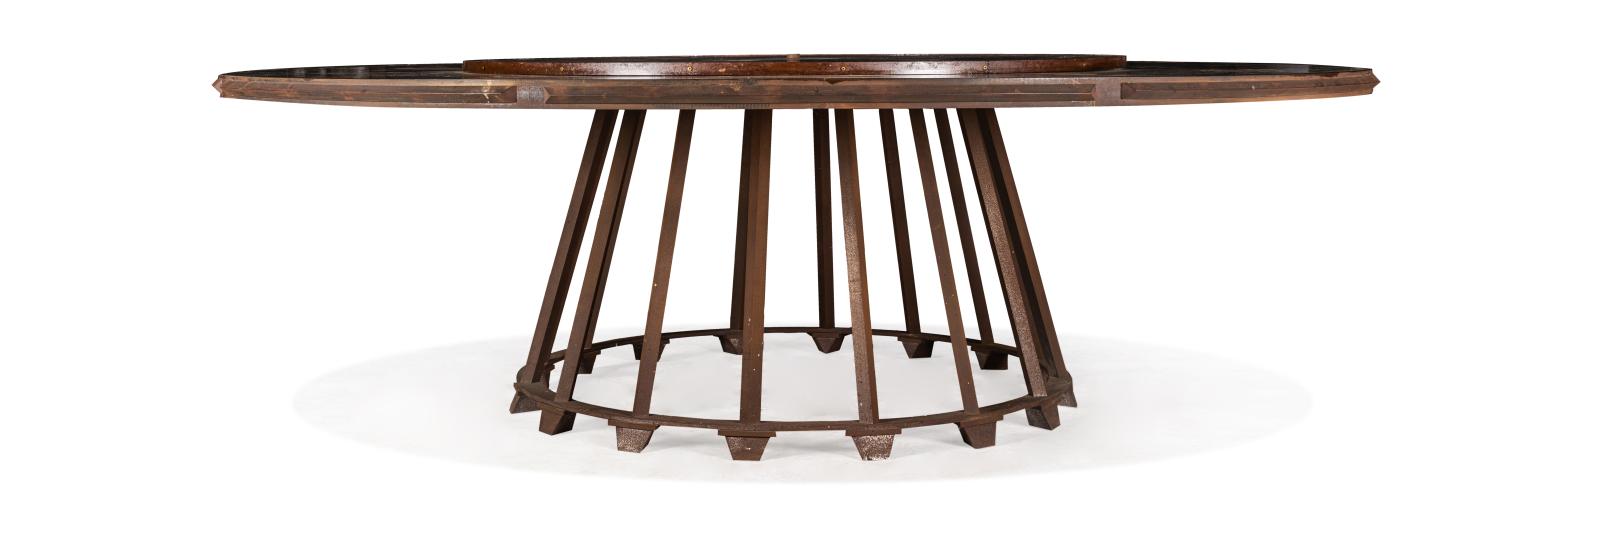 Table circulaire à plateau tournant en cuivre verni et piétement en acier oxydé, pièce unique, h. 79, diam. 258 cm. Estimation : 10 000/15